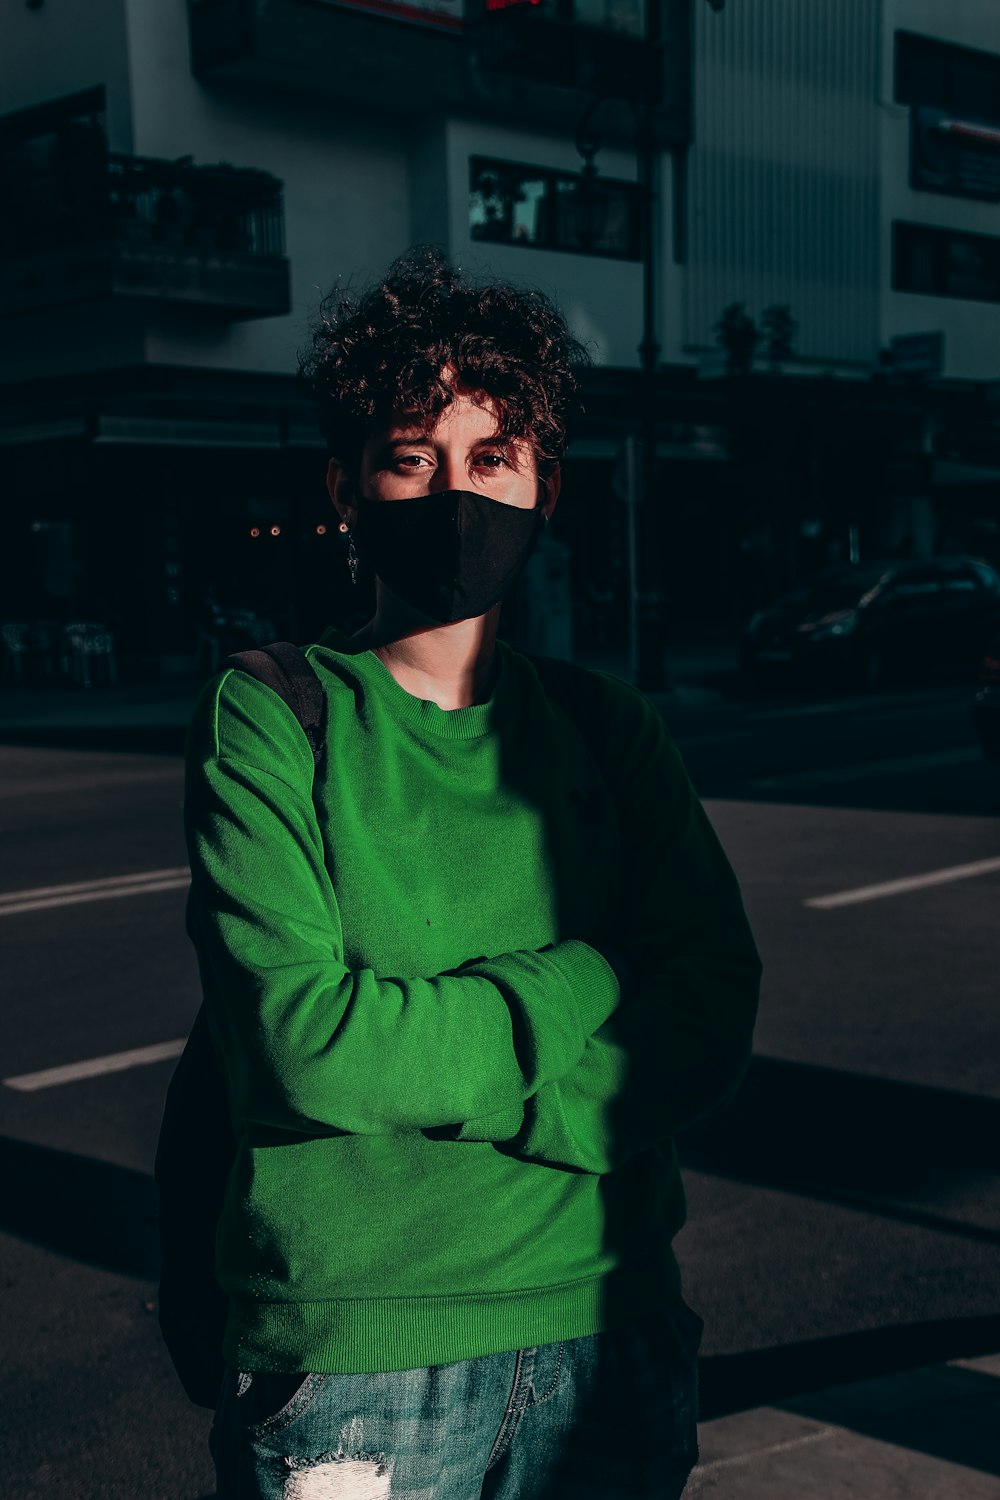 黒いマスクをした緑色のセーターを着た男性が夜間に歩道に立つ